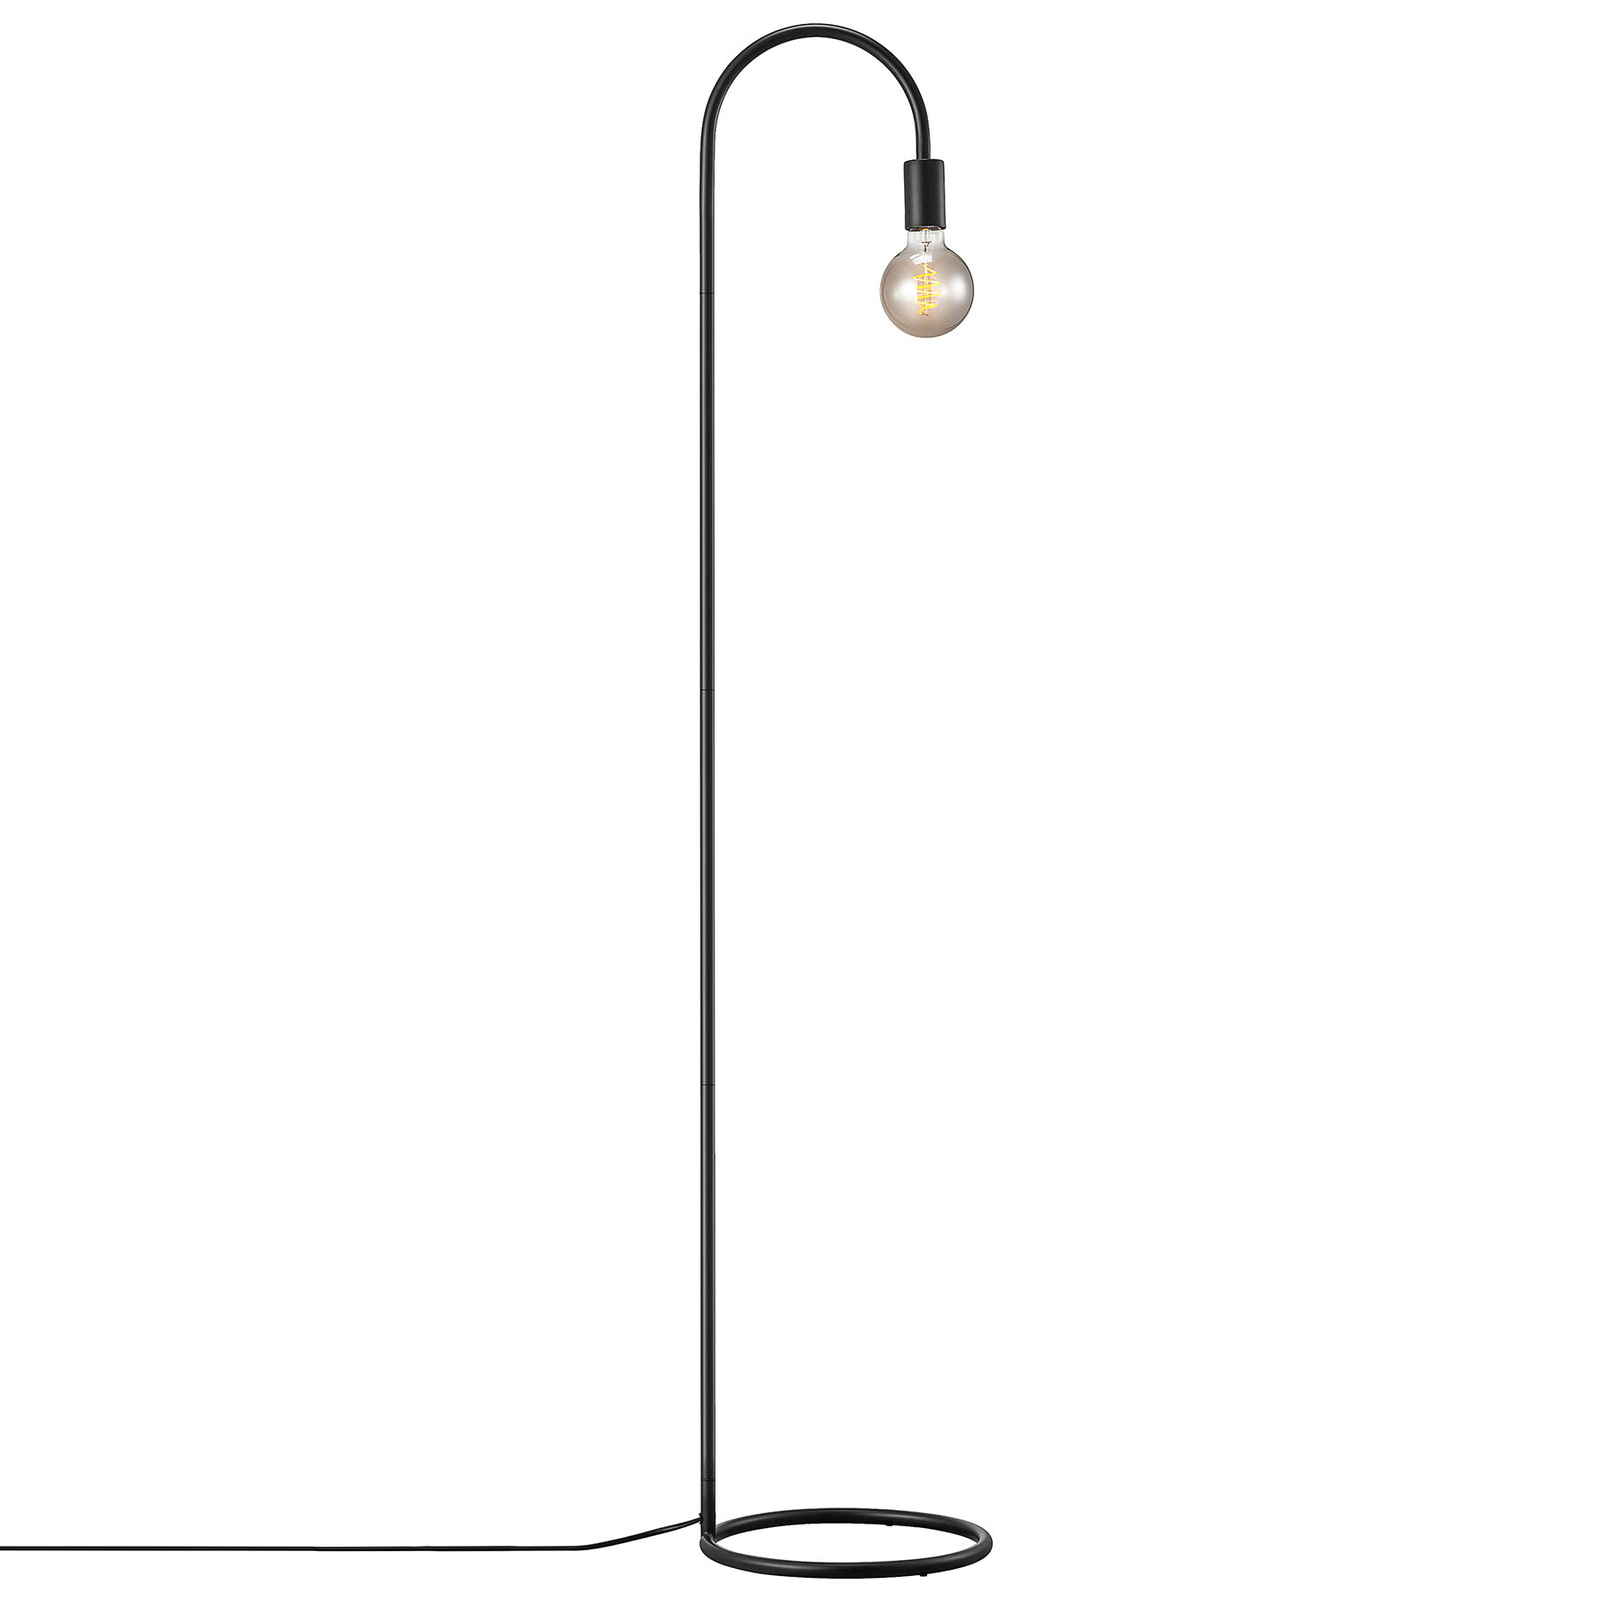 Paco gulvlampe i minimalistisk stil